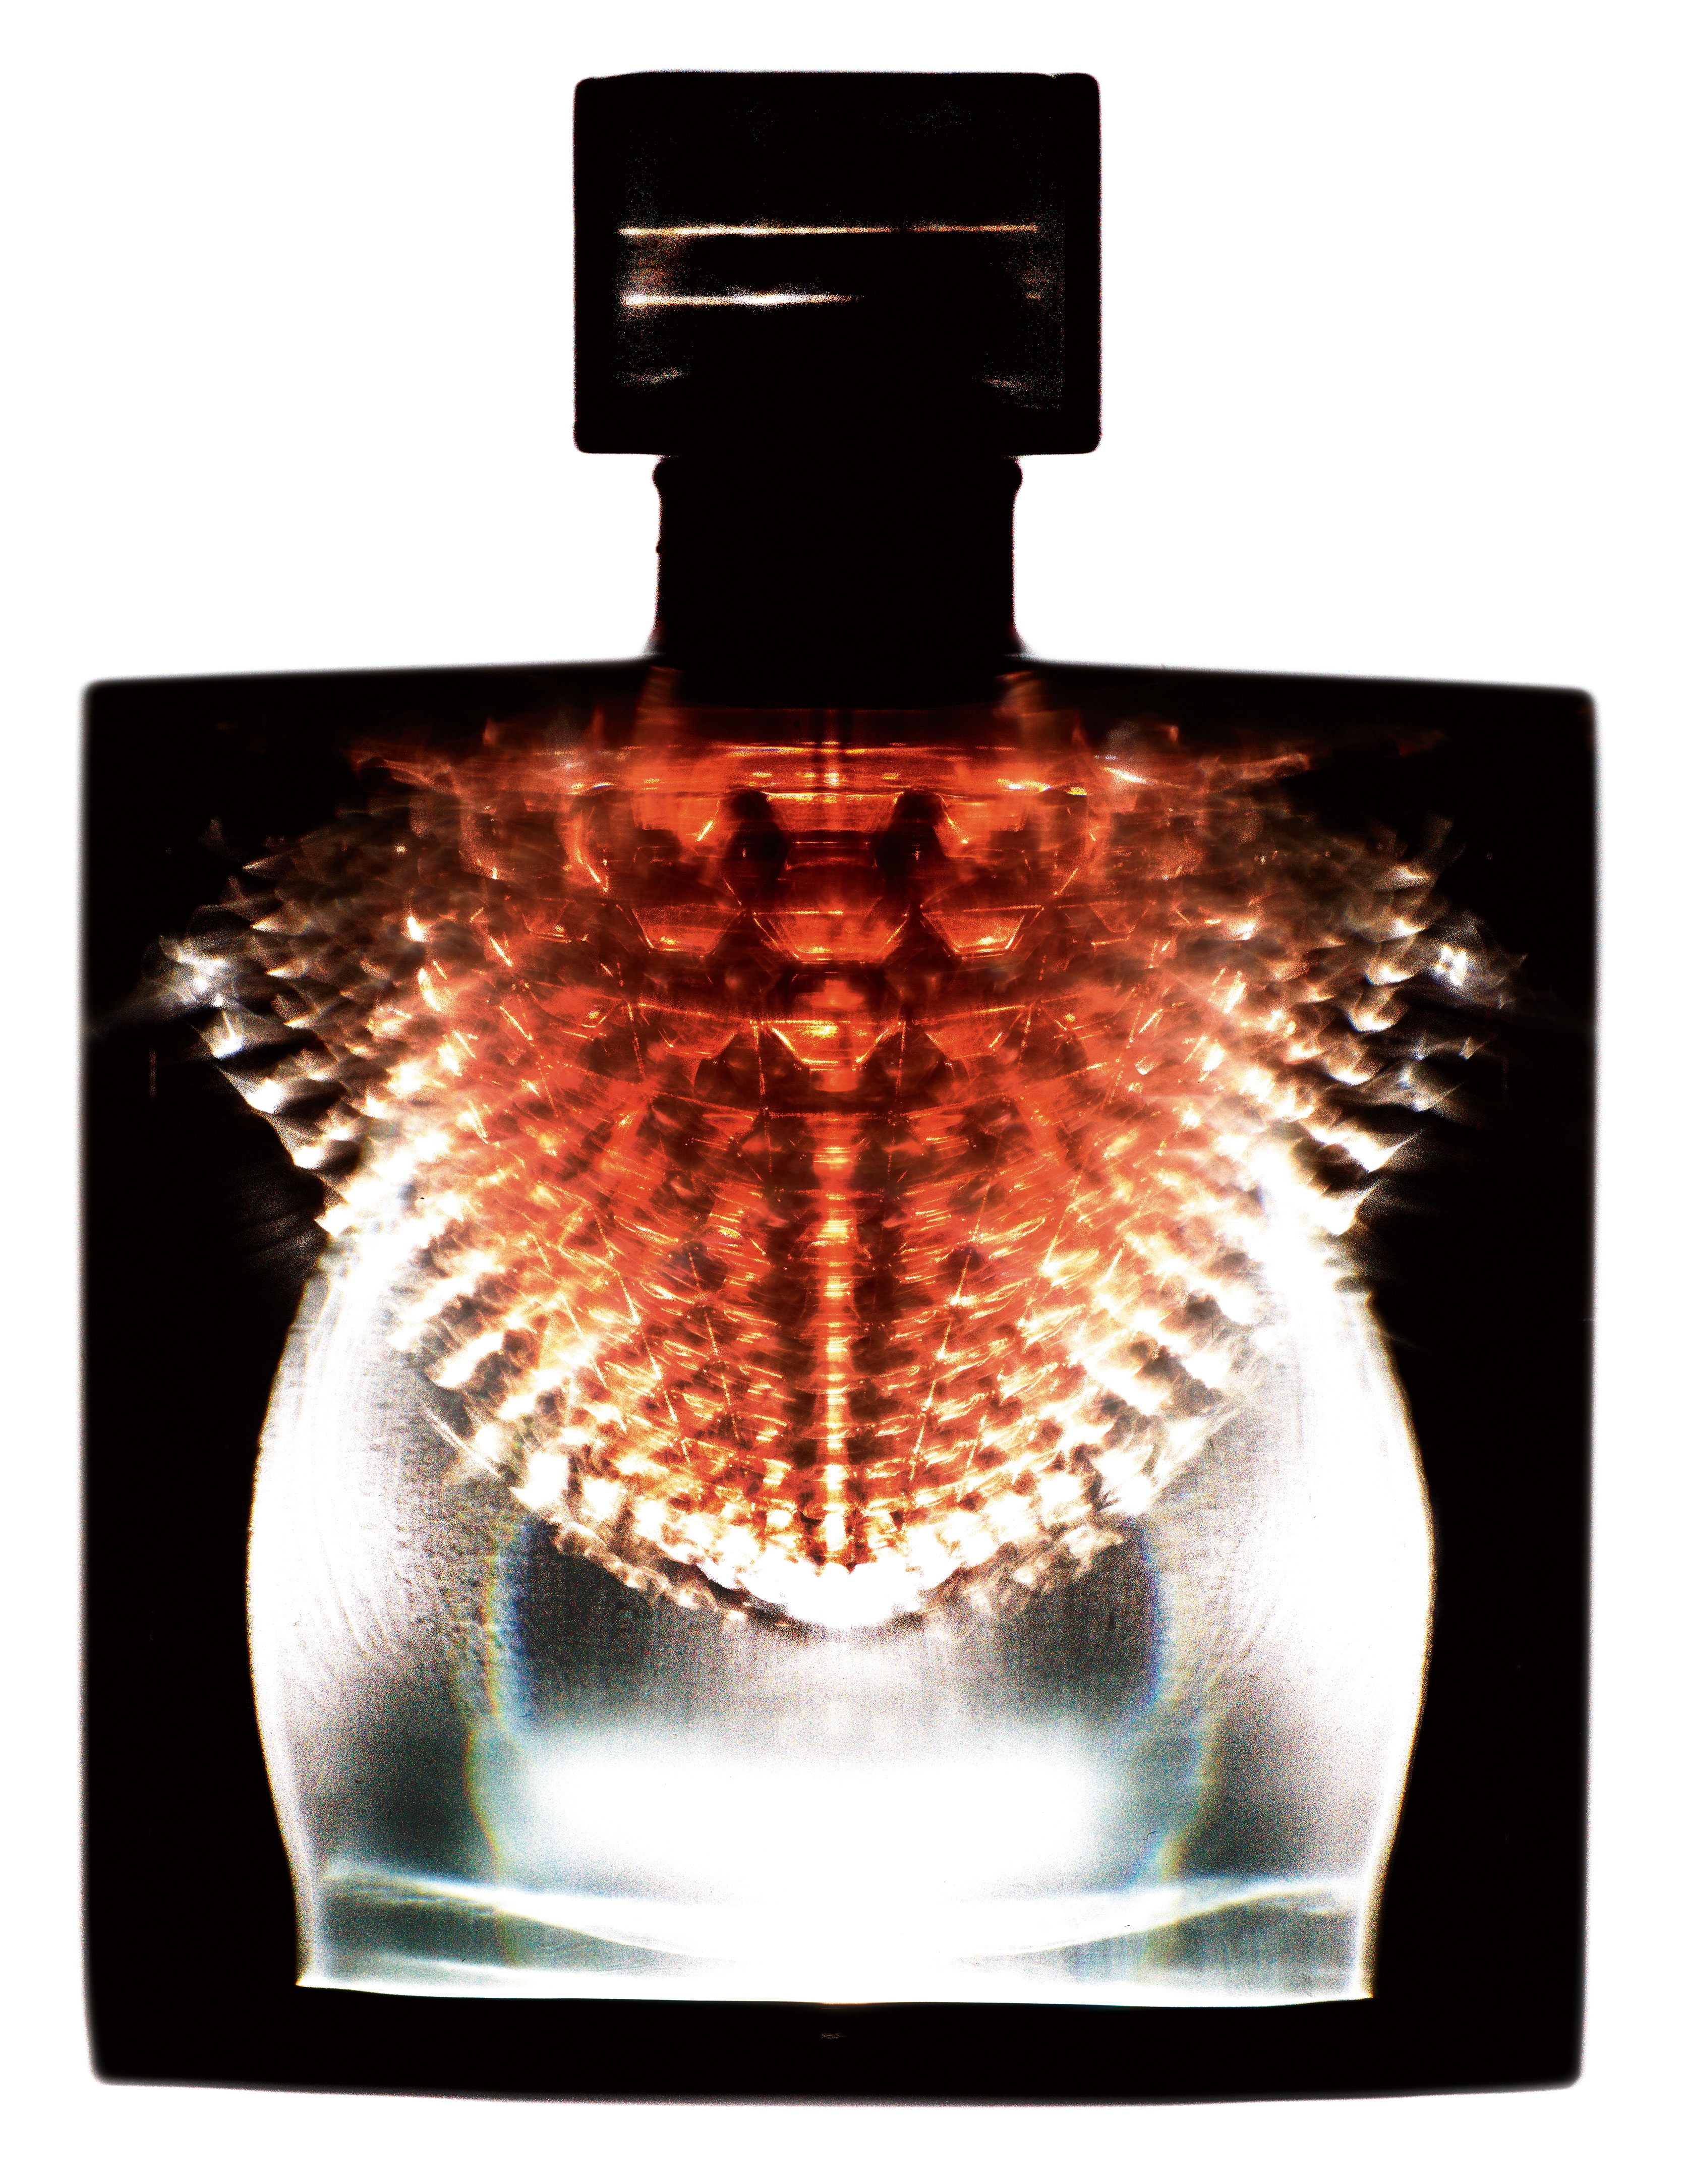 “Révélation", les nouveaux parfums photographiés par Guido Mocafico